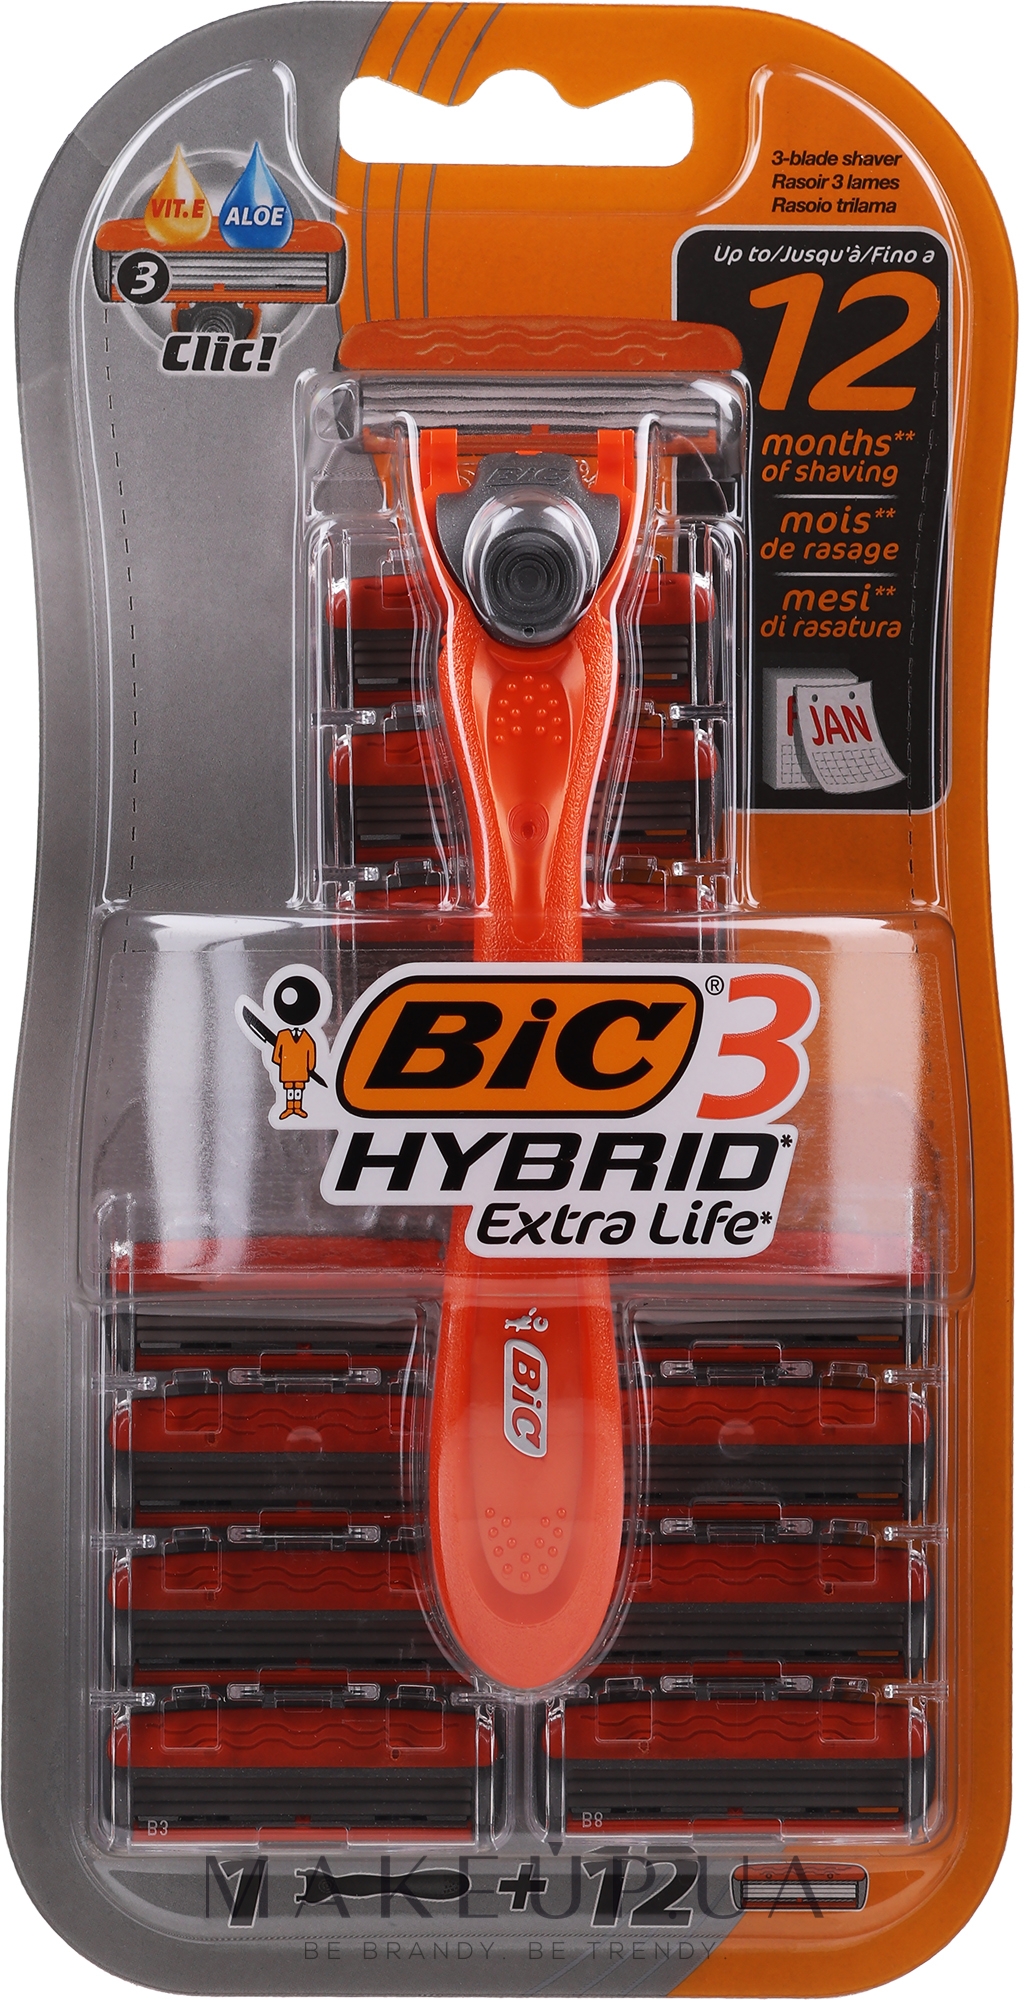 Мужская бритва c 12 сменными кассетами - Bic 3 Hybrid Extra Life — фото 12шт